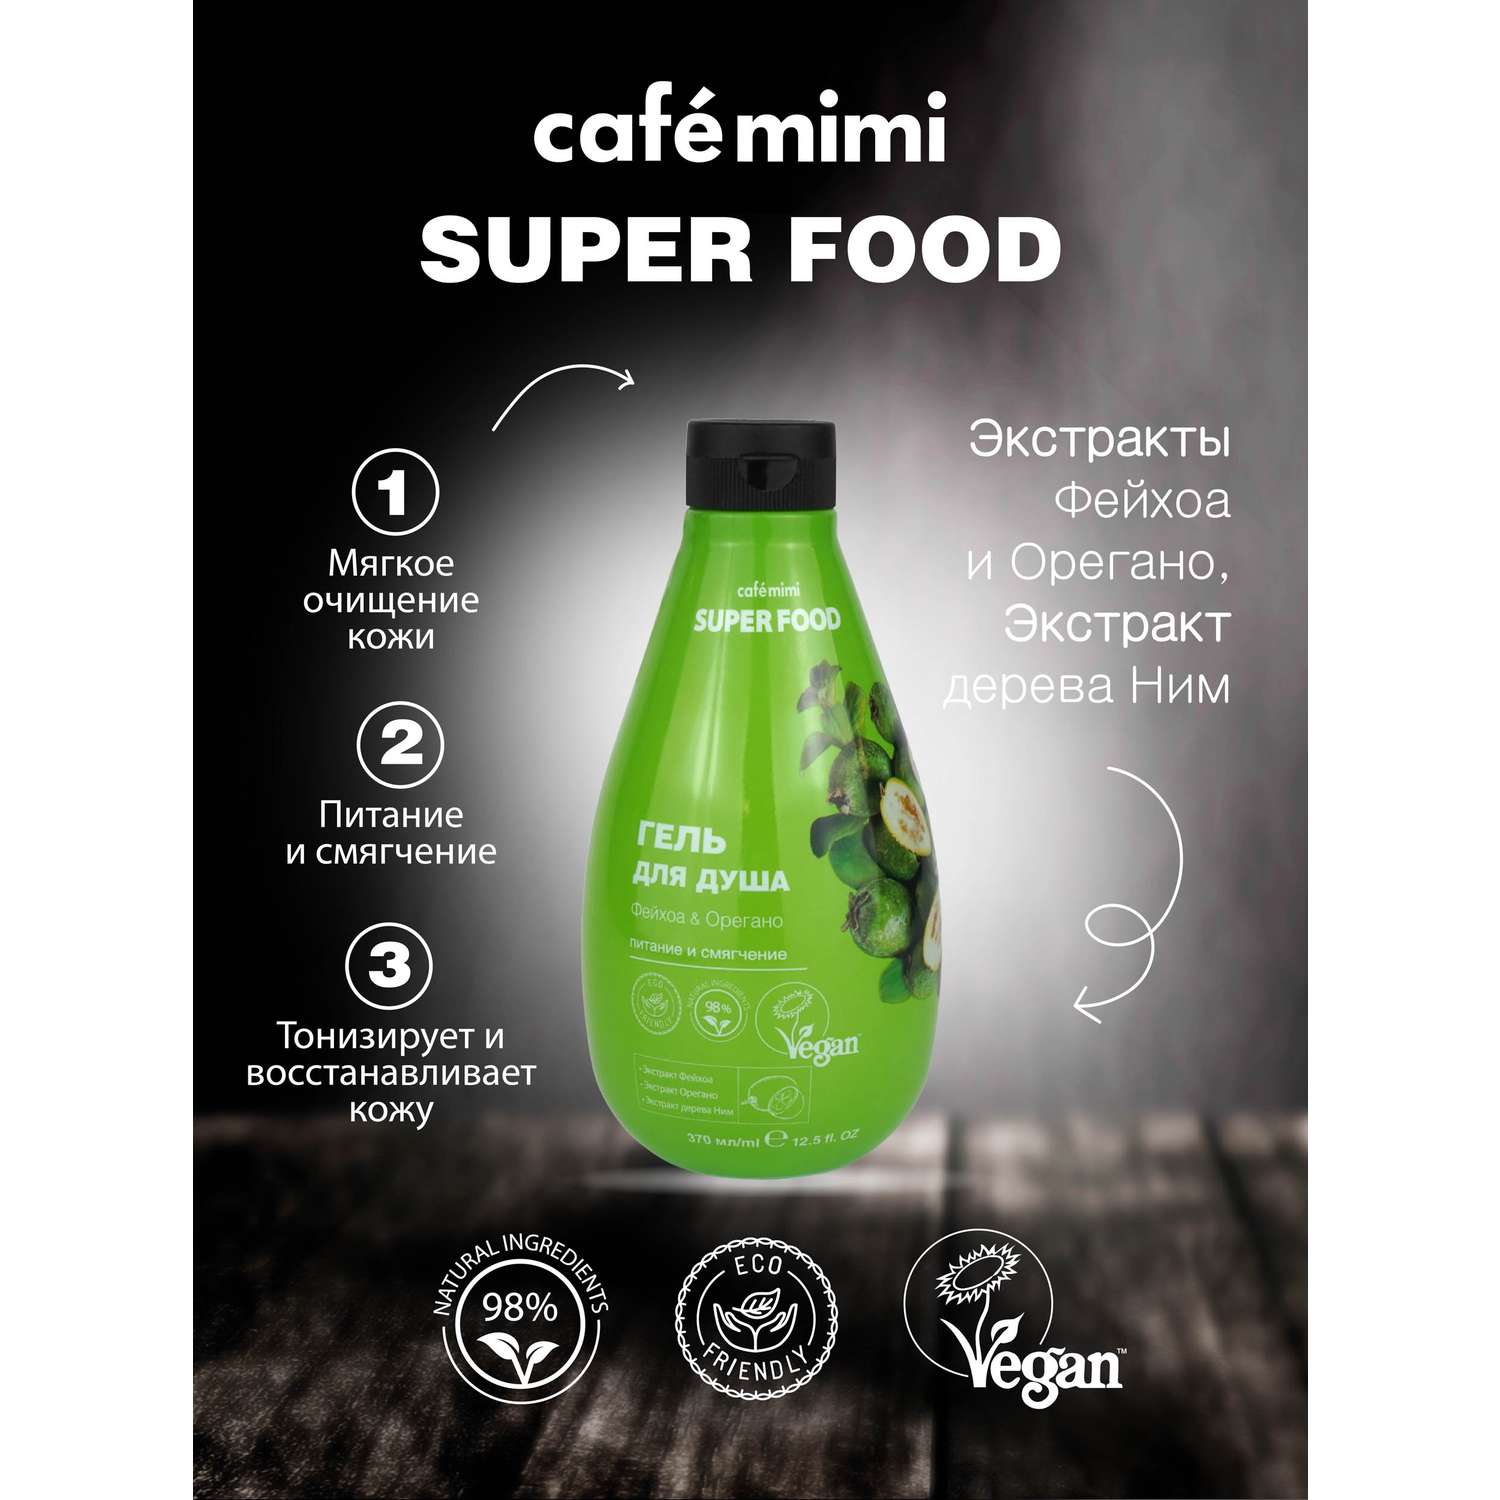 Гель для душа cafe mimi Super Food Фейхоа и Орегано 370 мл - фото 4